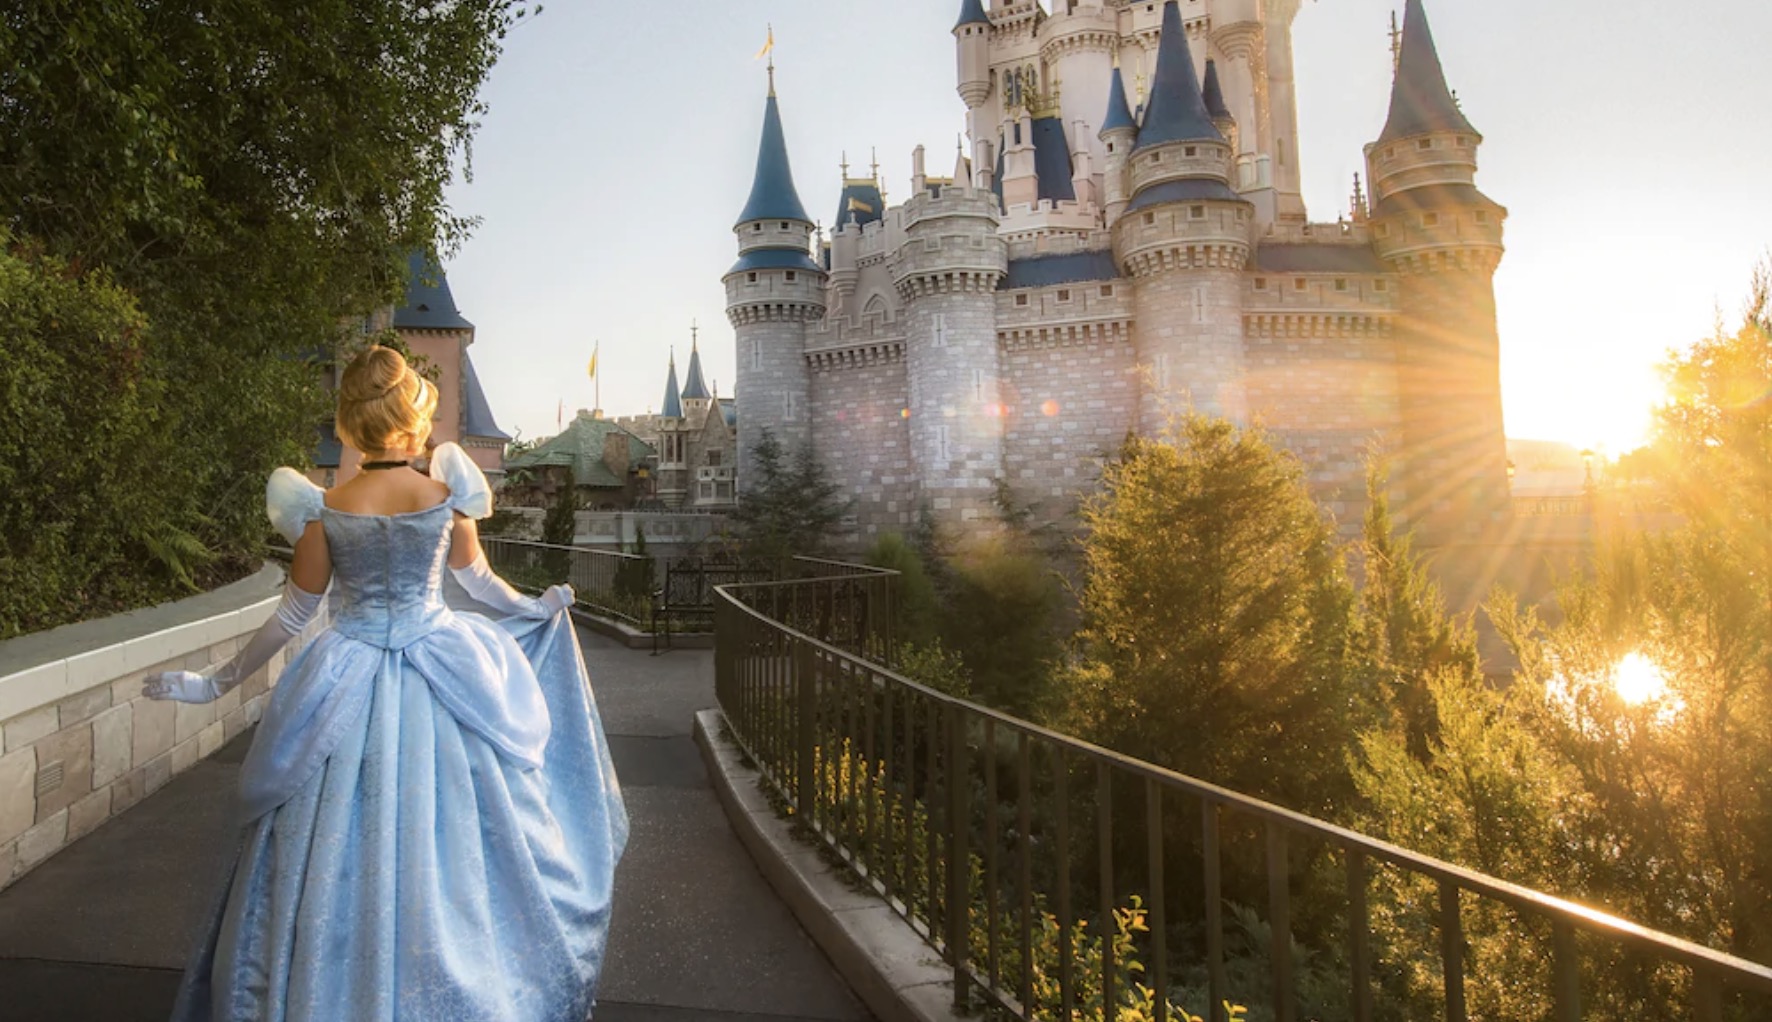 Cinderella at Cinderella Castle in Magic Kingdom